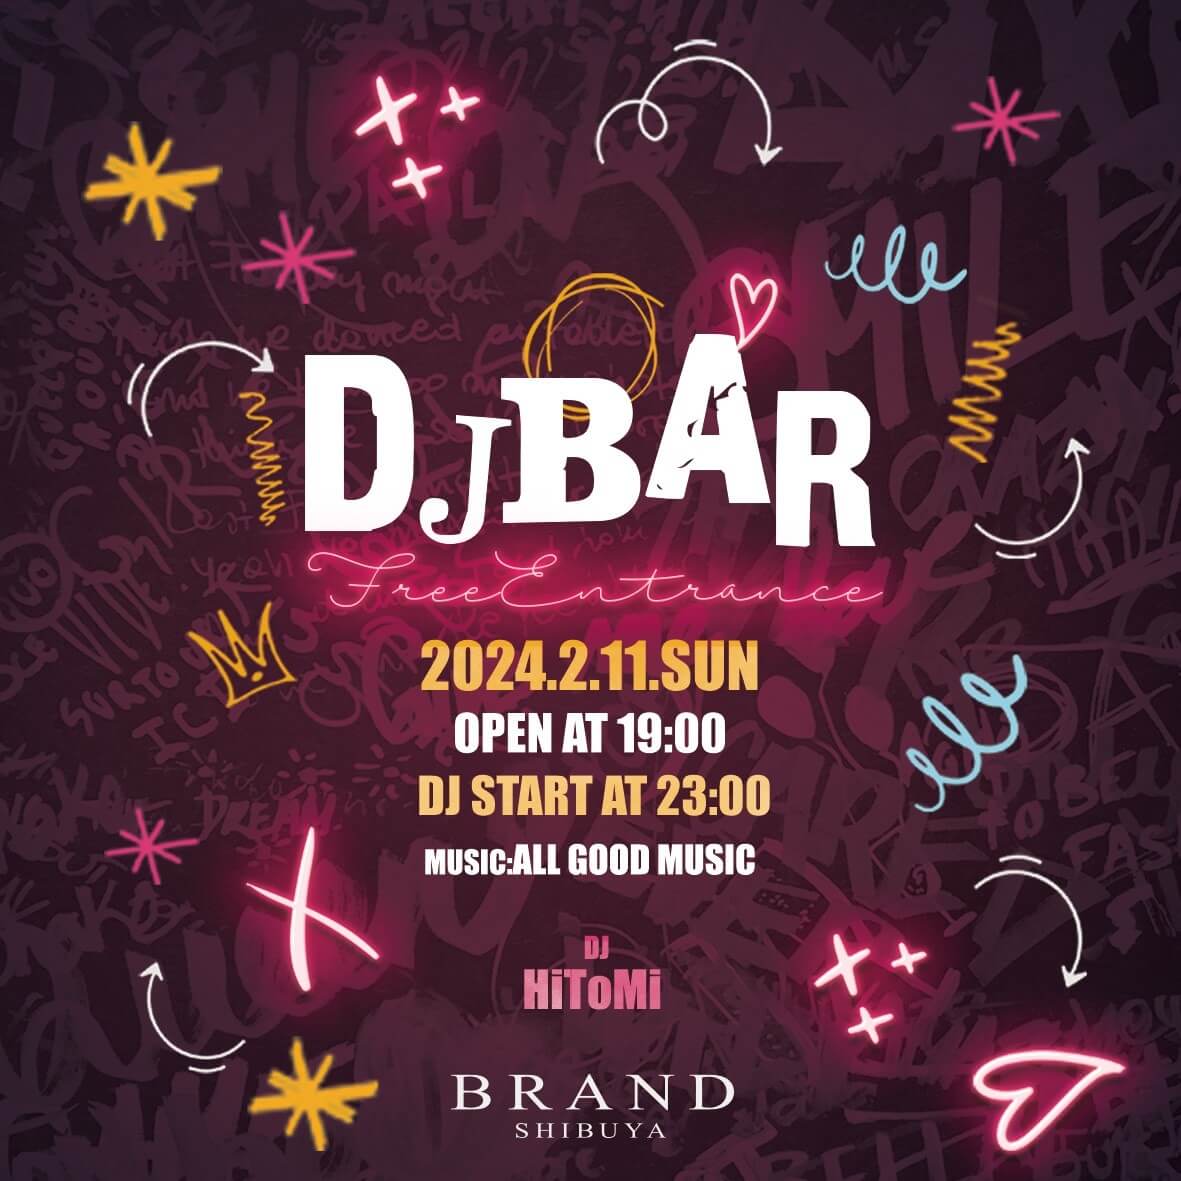 DJBAR 2024年02月11日（日曜日）に渋谷 クラブのBRAND SHIBUYAで開催されるALL MIXイベント